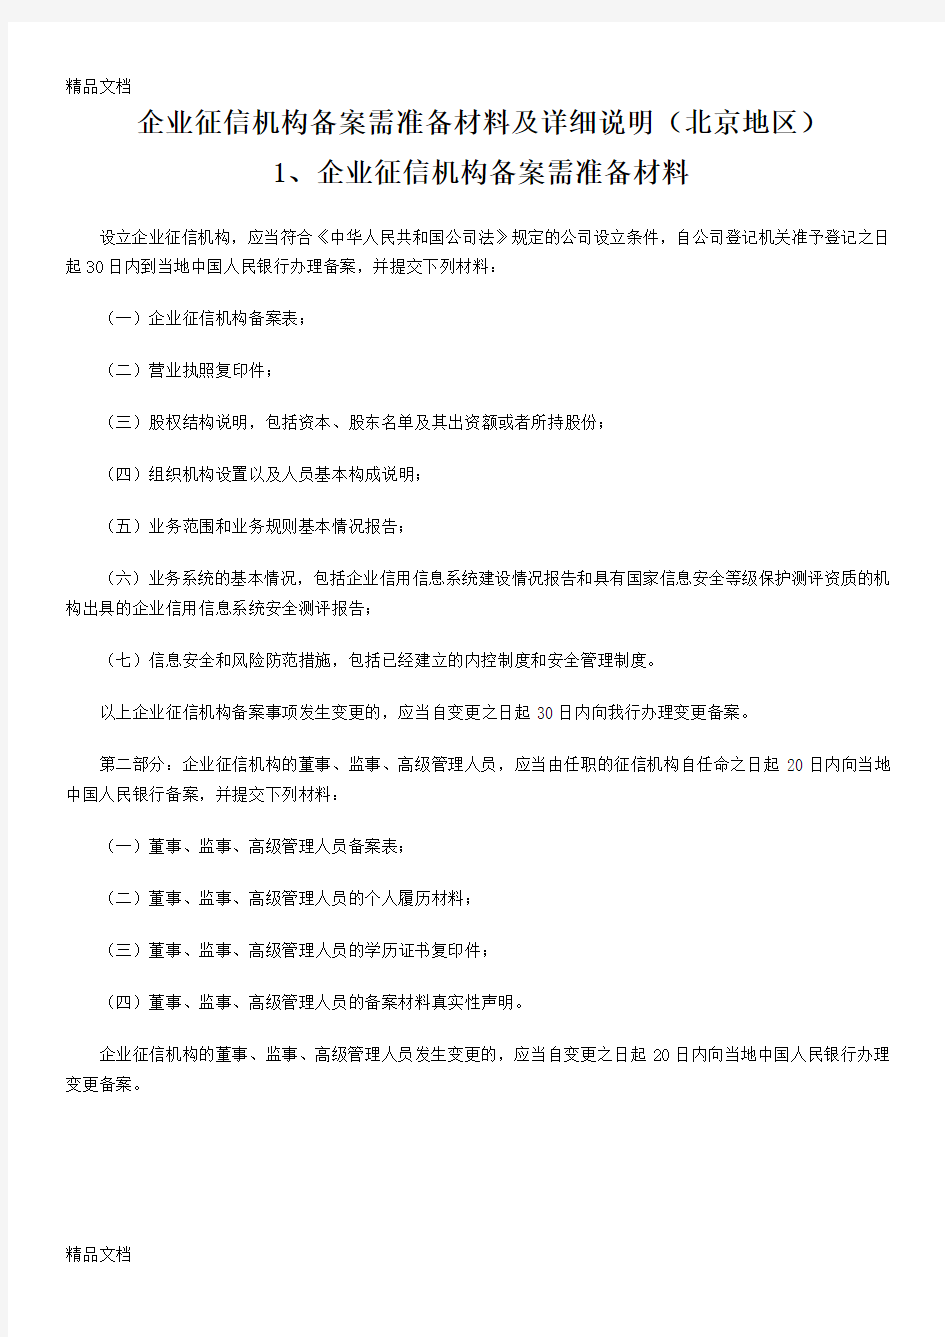 企业征信机构备案需准备材料及详细说明(北京地区)教程文件